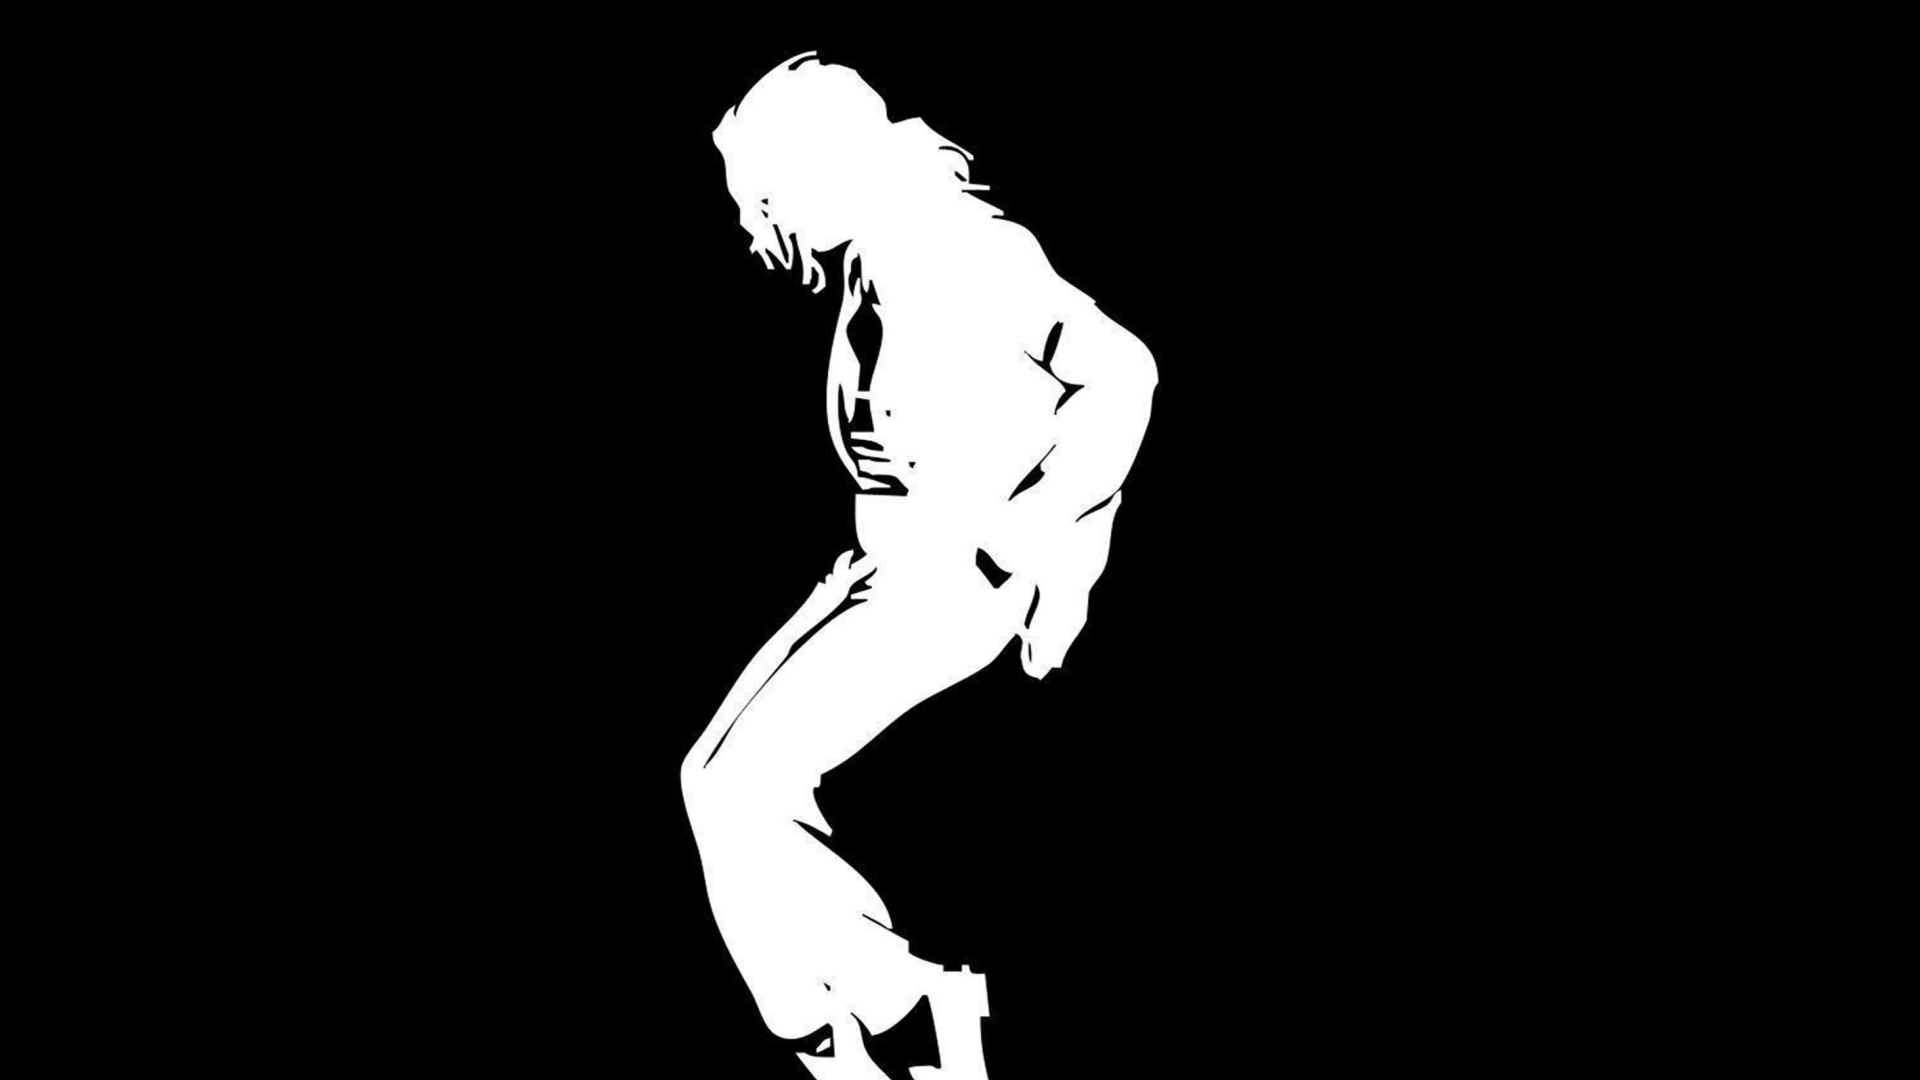 Michael Jackson wallpaper 1920x1080